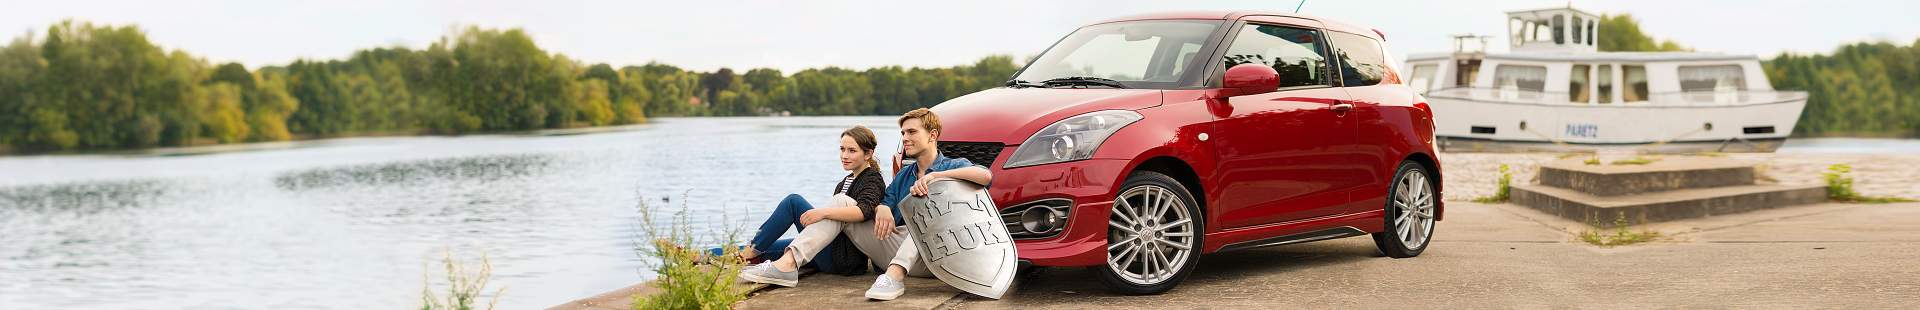 Mann und Frau sitzen vor einem Auto am See